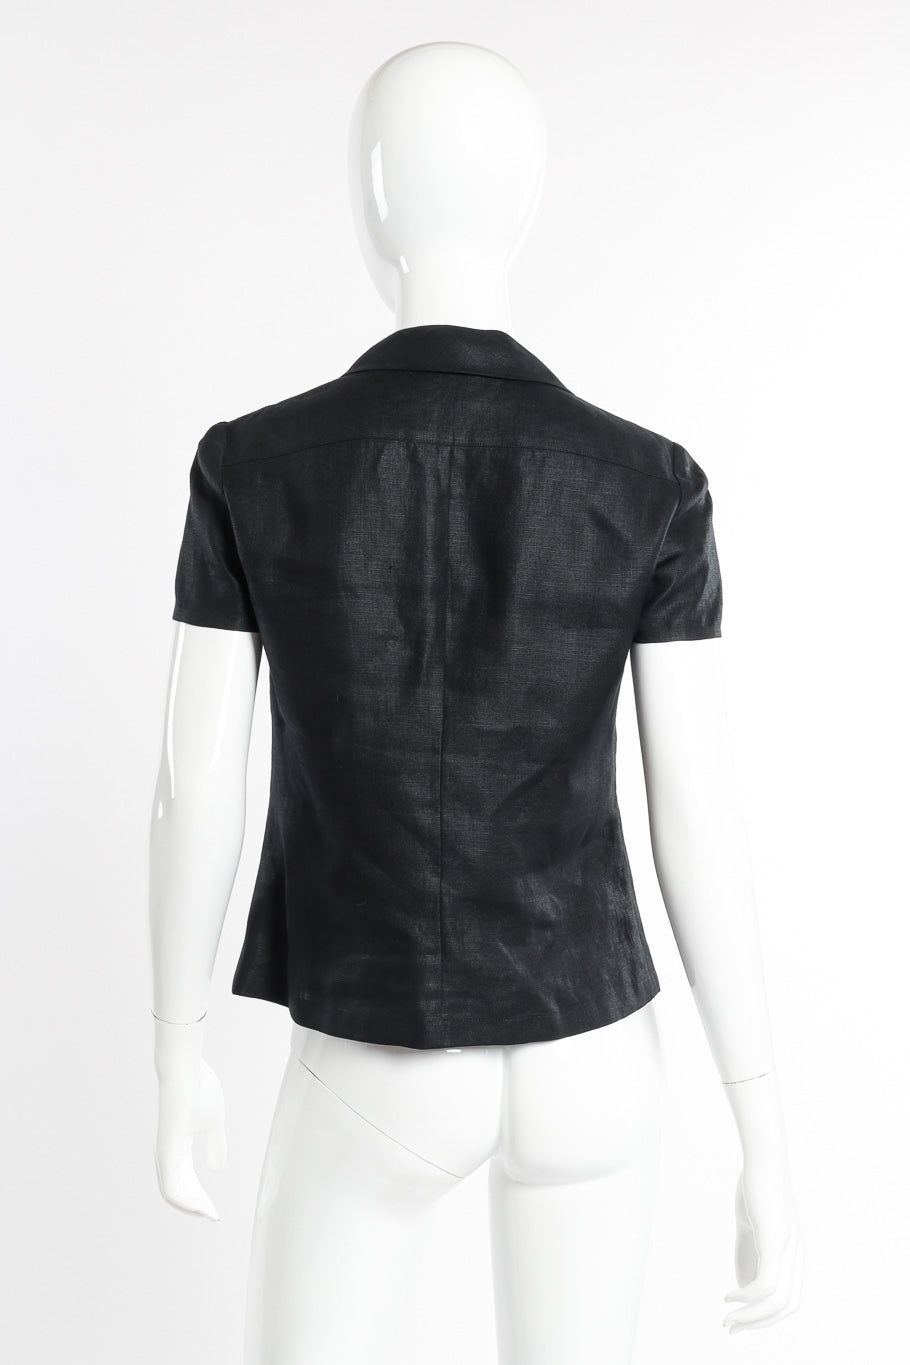 Vintage Chanel CC Button Linen Shirt back view on mannequin @recessla